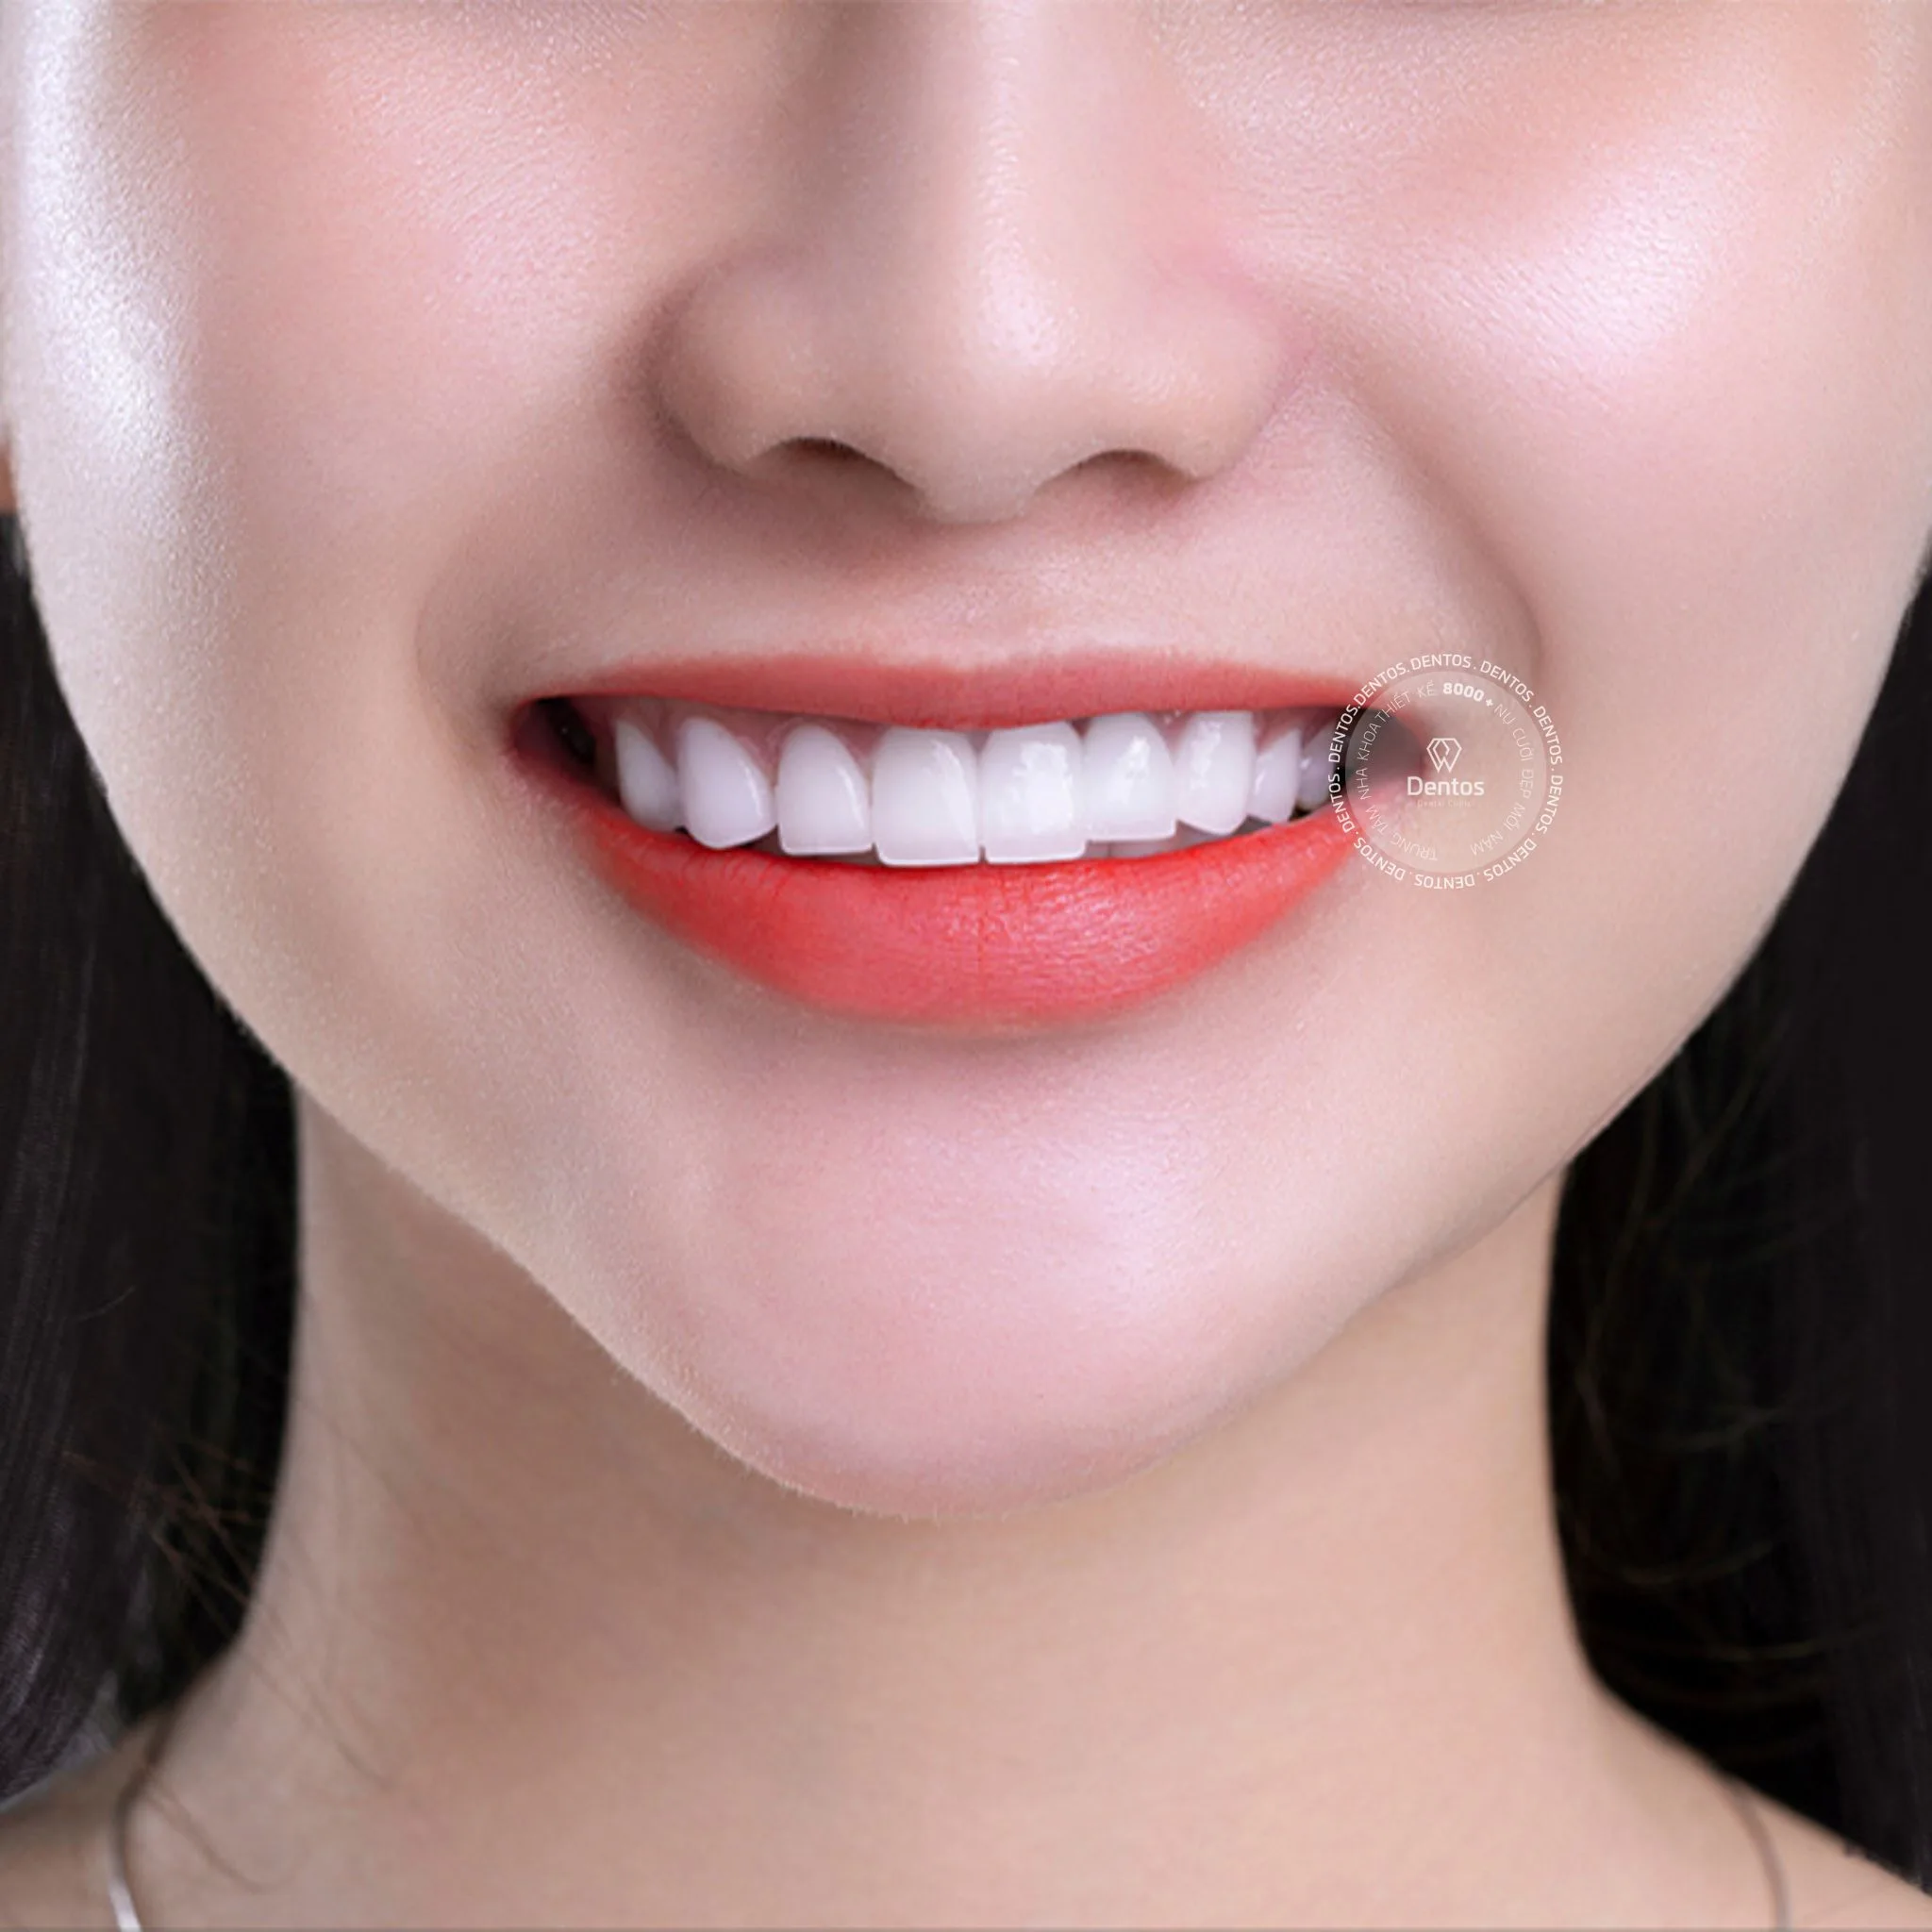 Răng sứ Zirconia được cấu tạo hoàn toàn từ sứ Zirconium dioxide